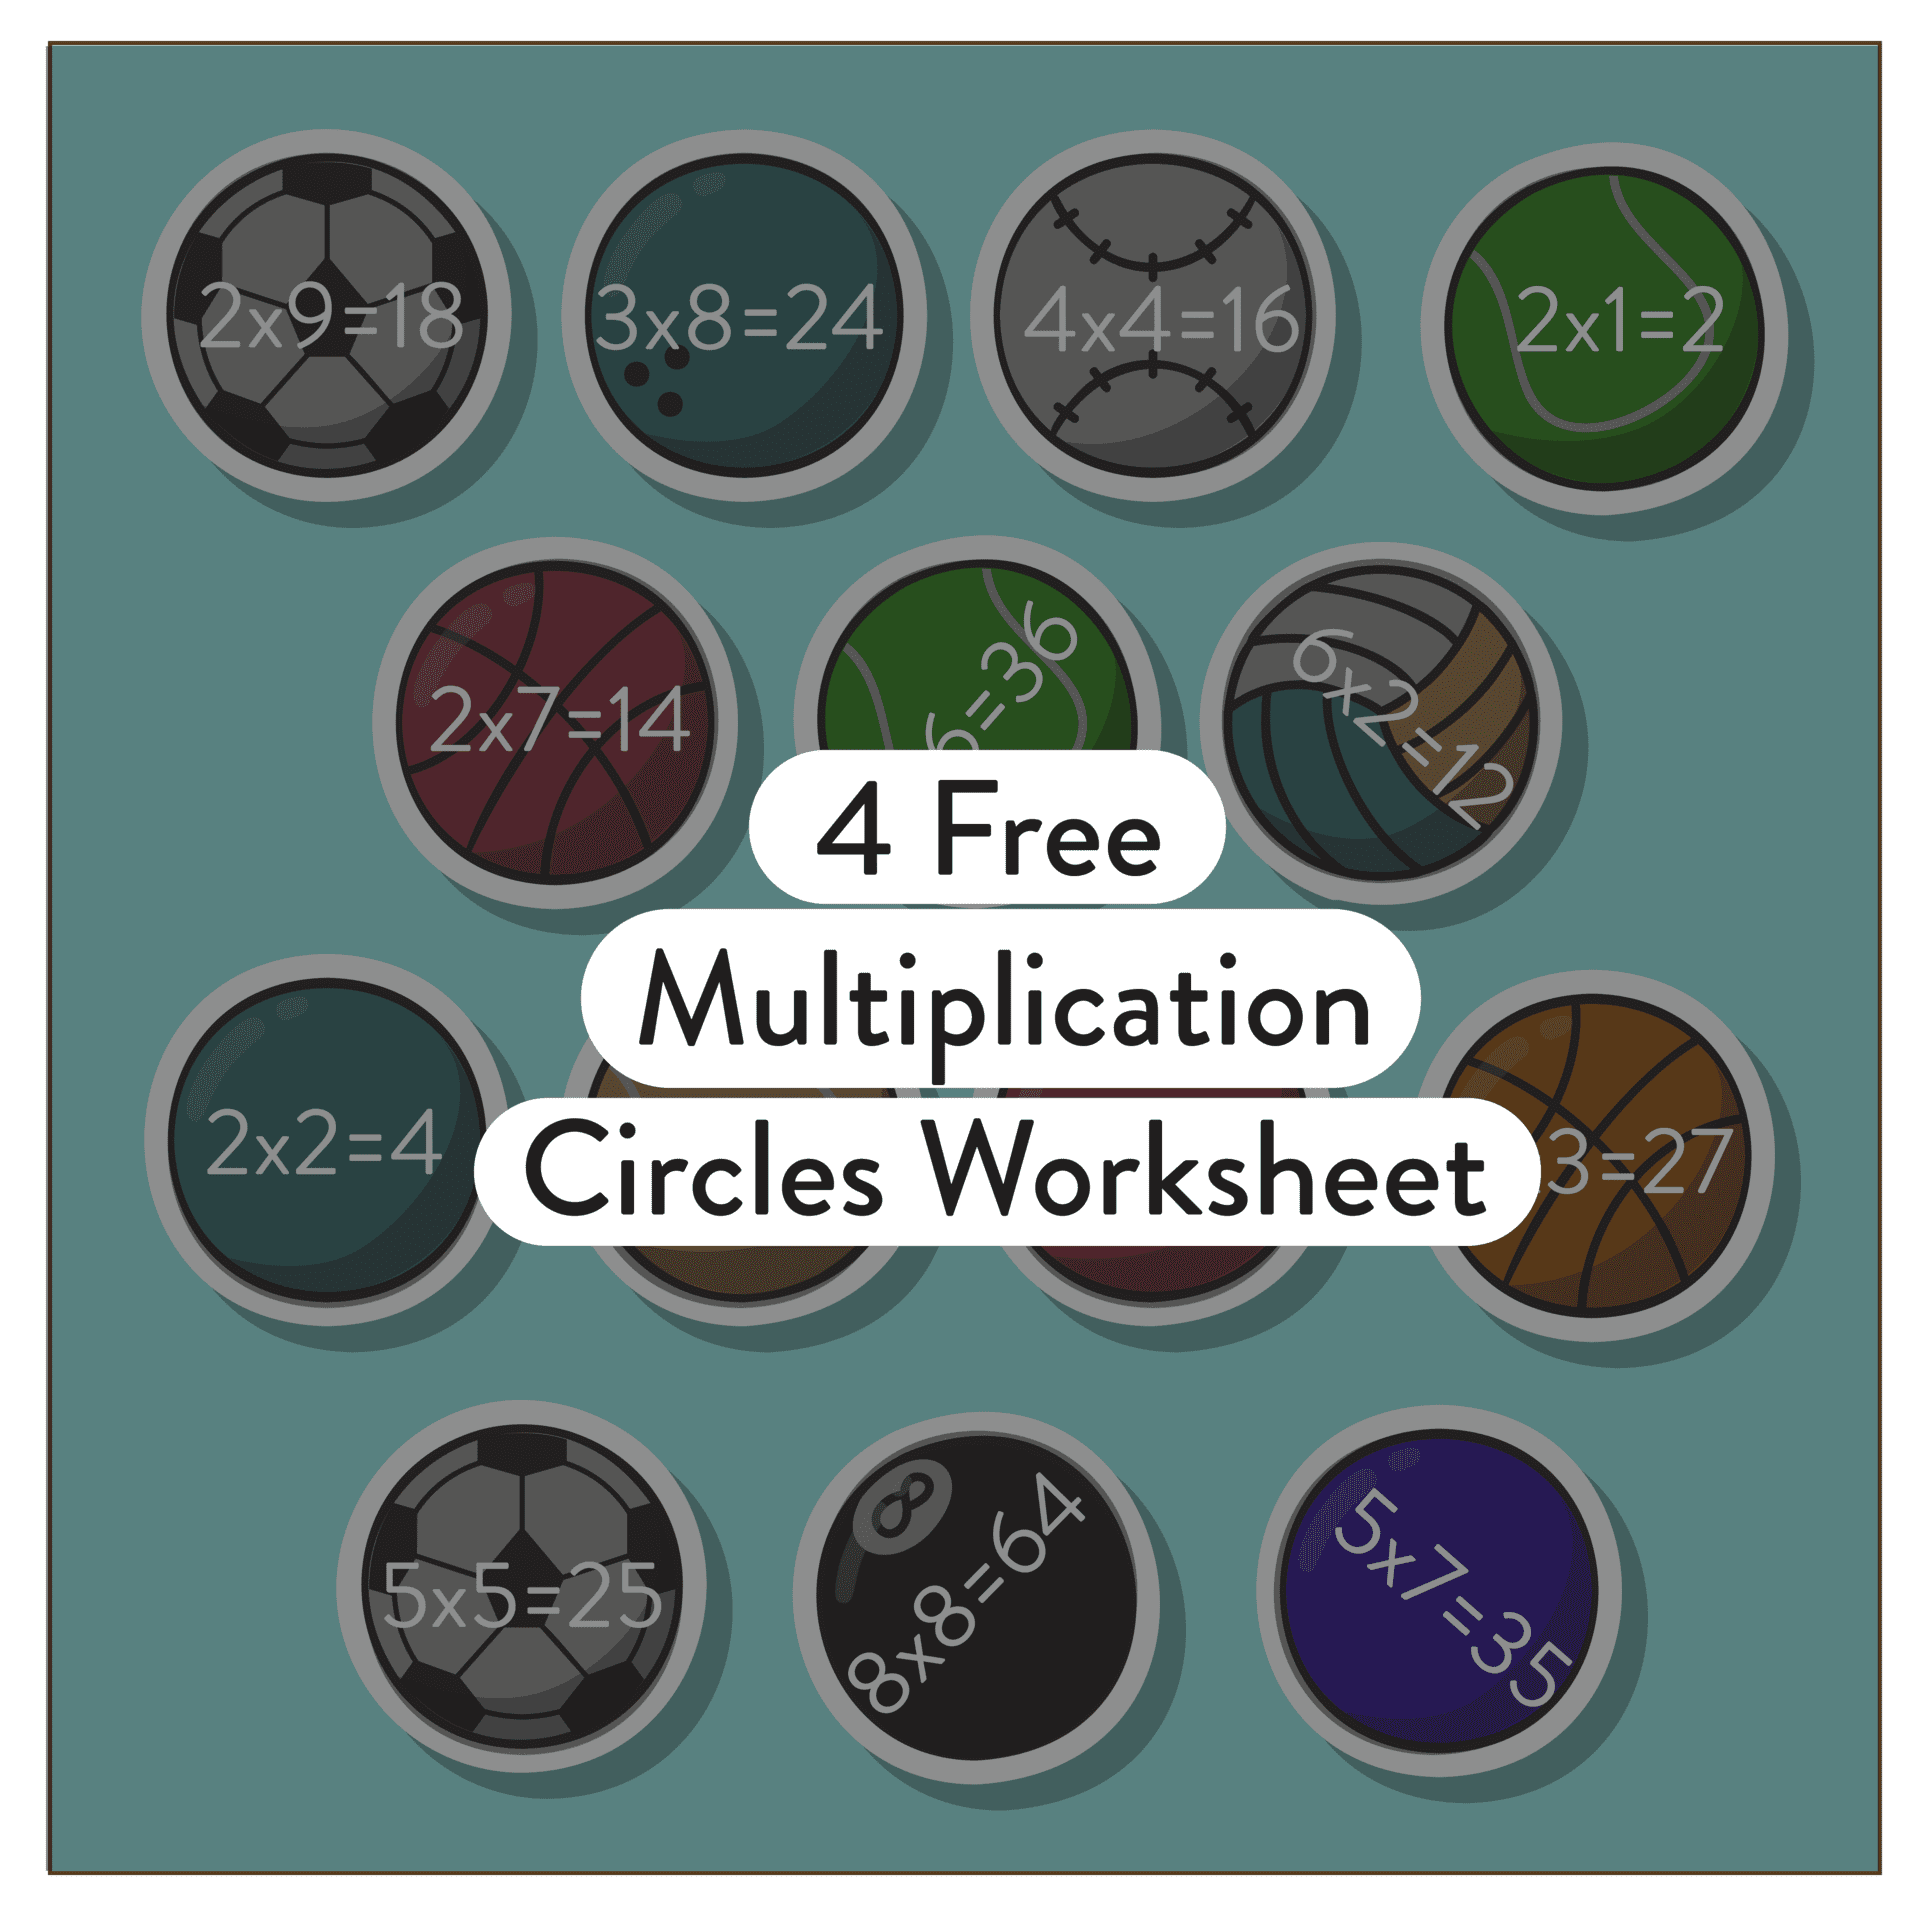 5 Free Multiplication Circles Worksheet